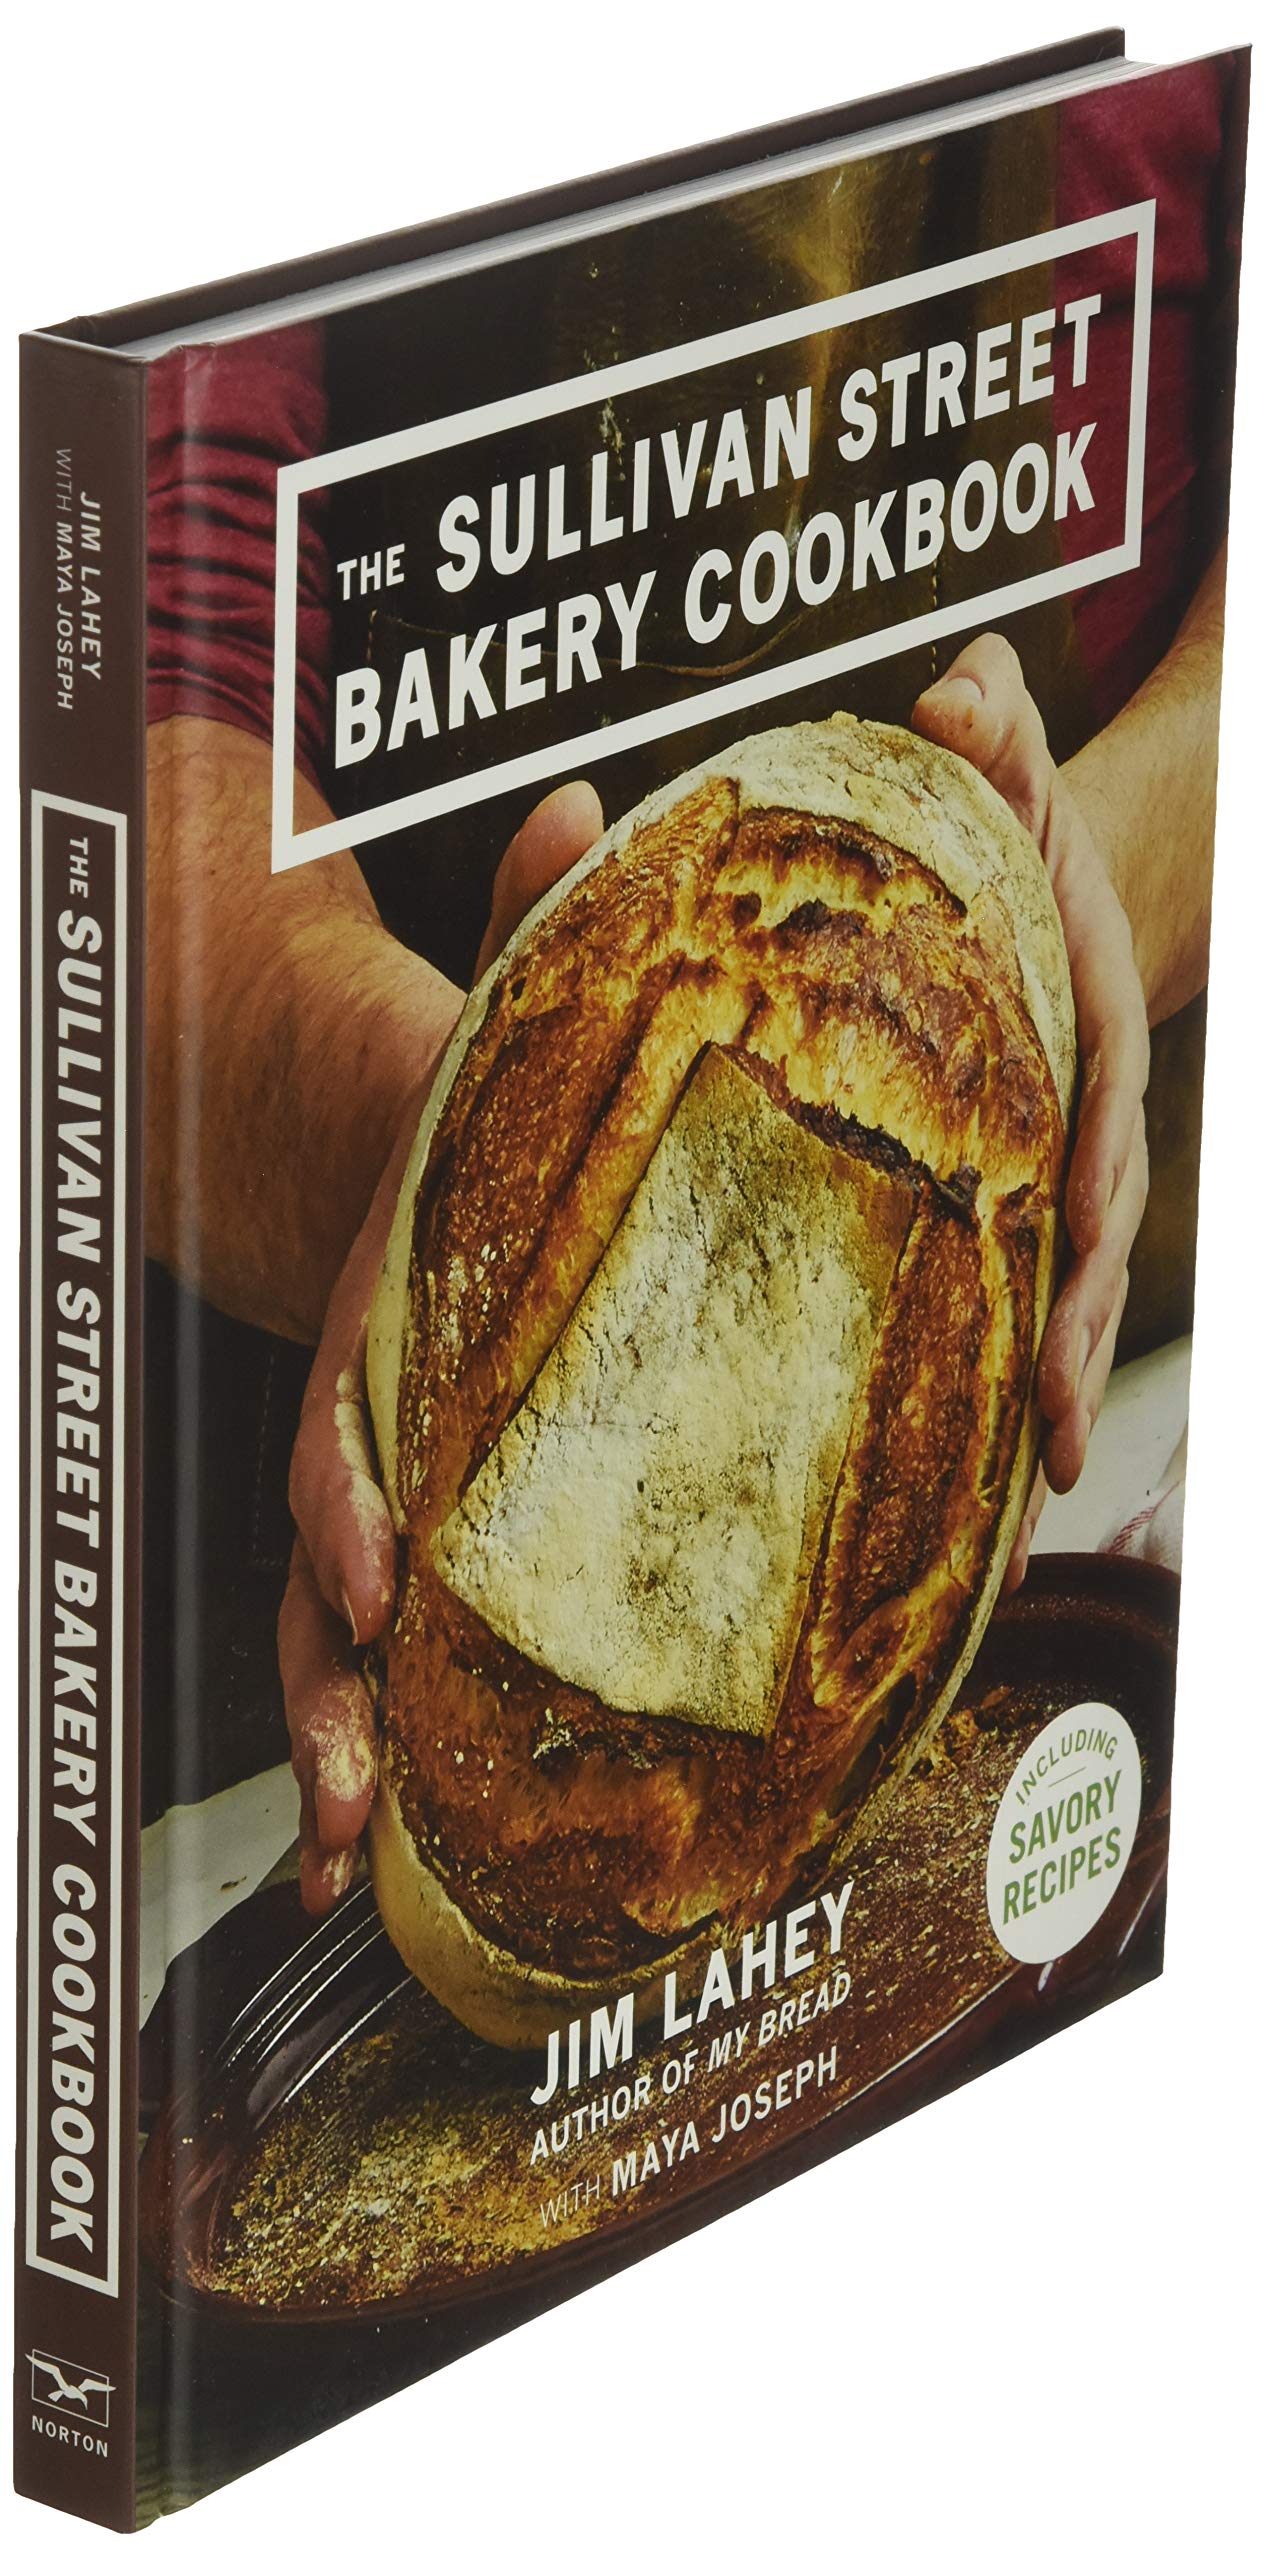 The Sullivan Street Bakery Cookbook